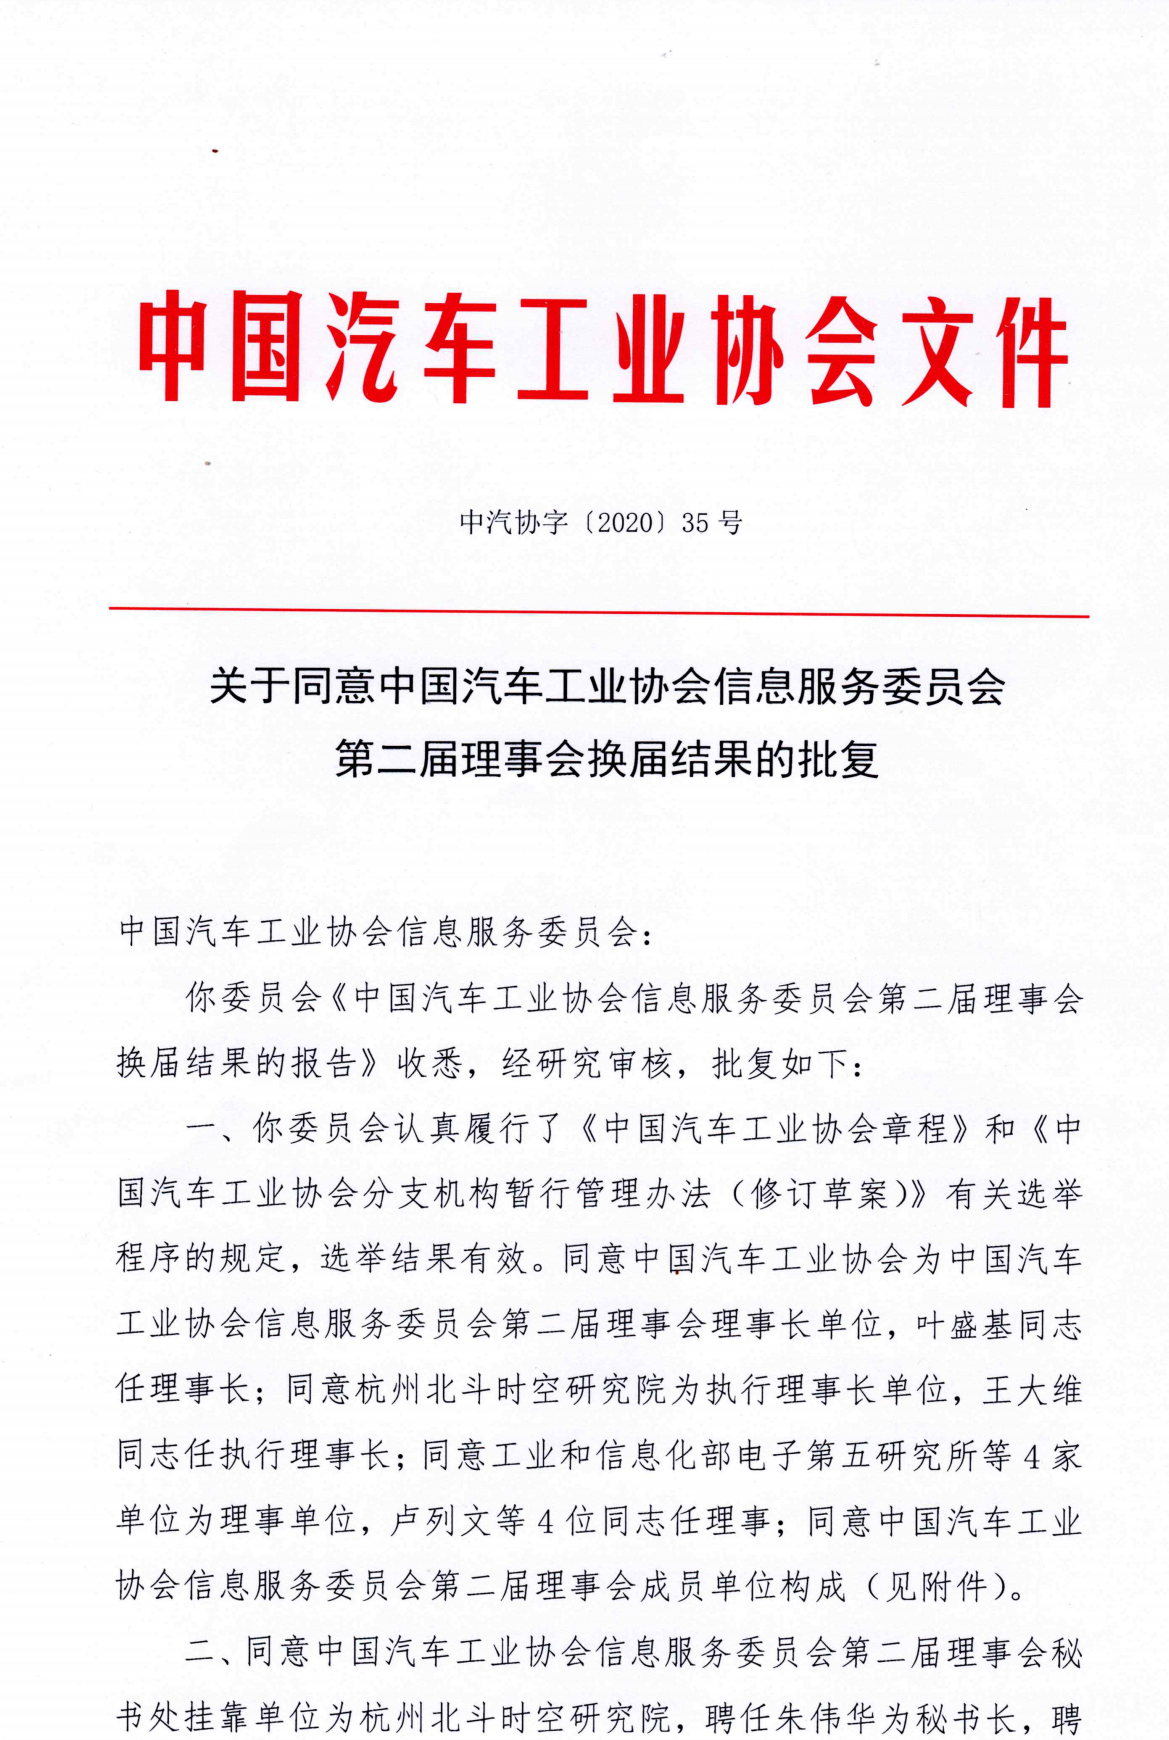 关于同意中国汽车工业协会信息服务委员会第二届理事会换届结果的批复_00.png